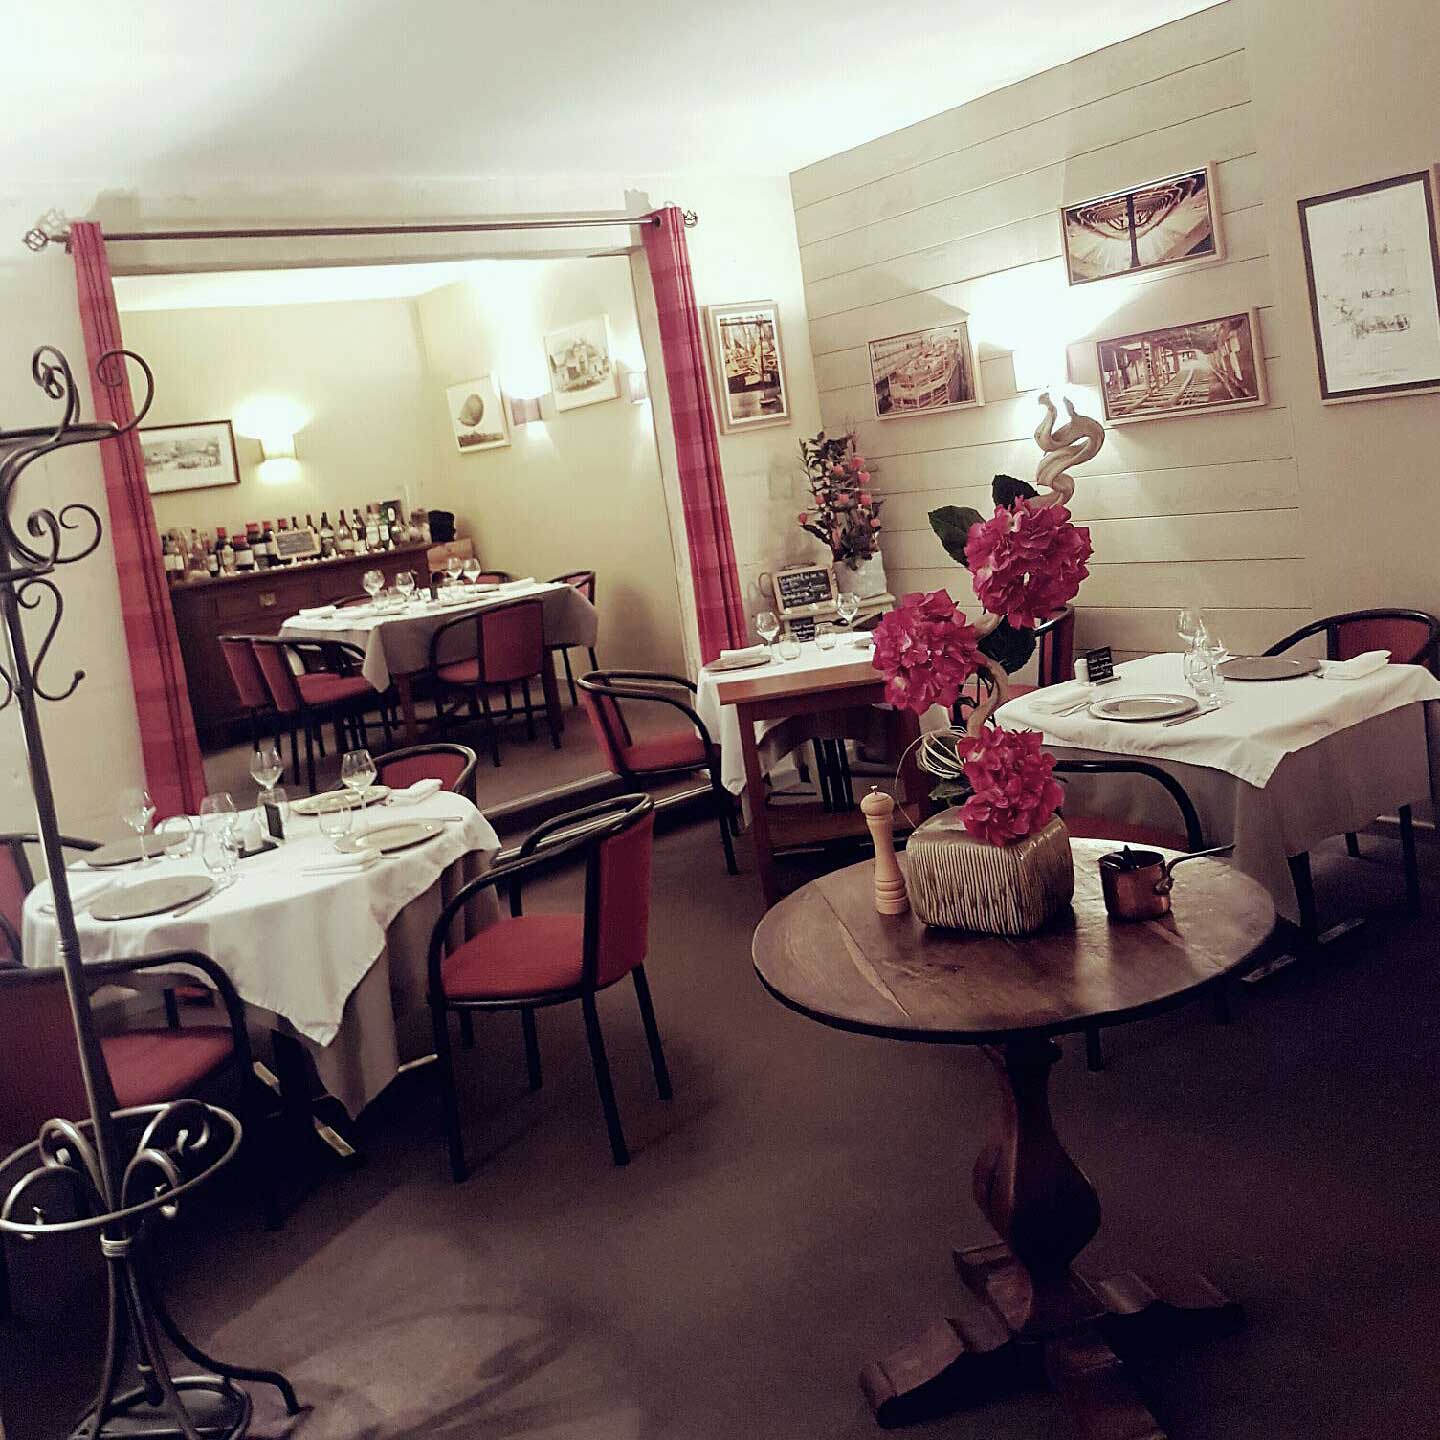 Bon Restaurant Rochefort les Quatre saisons Charente Maritime